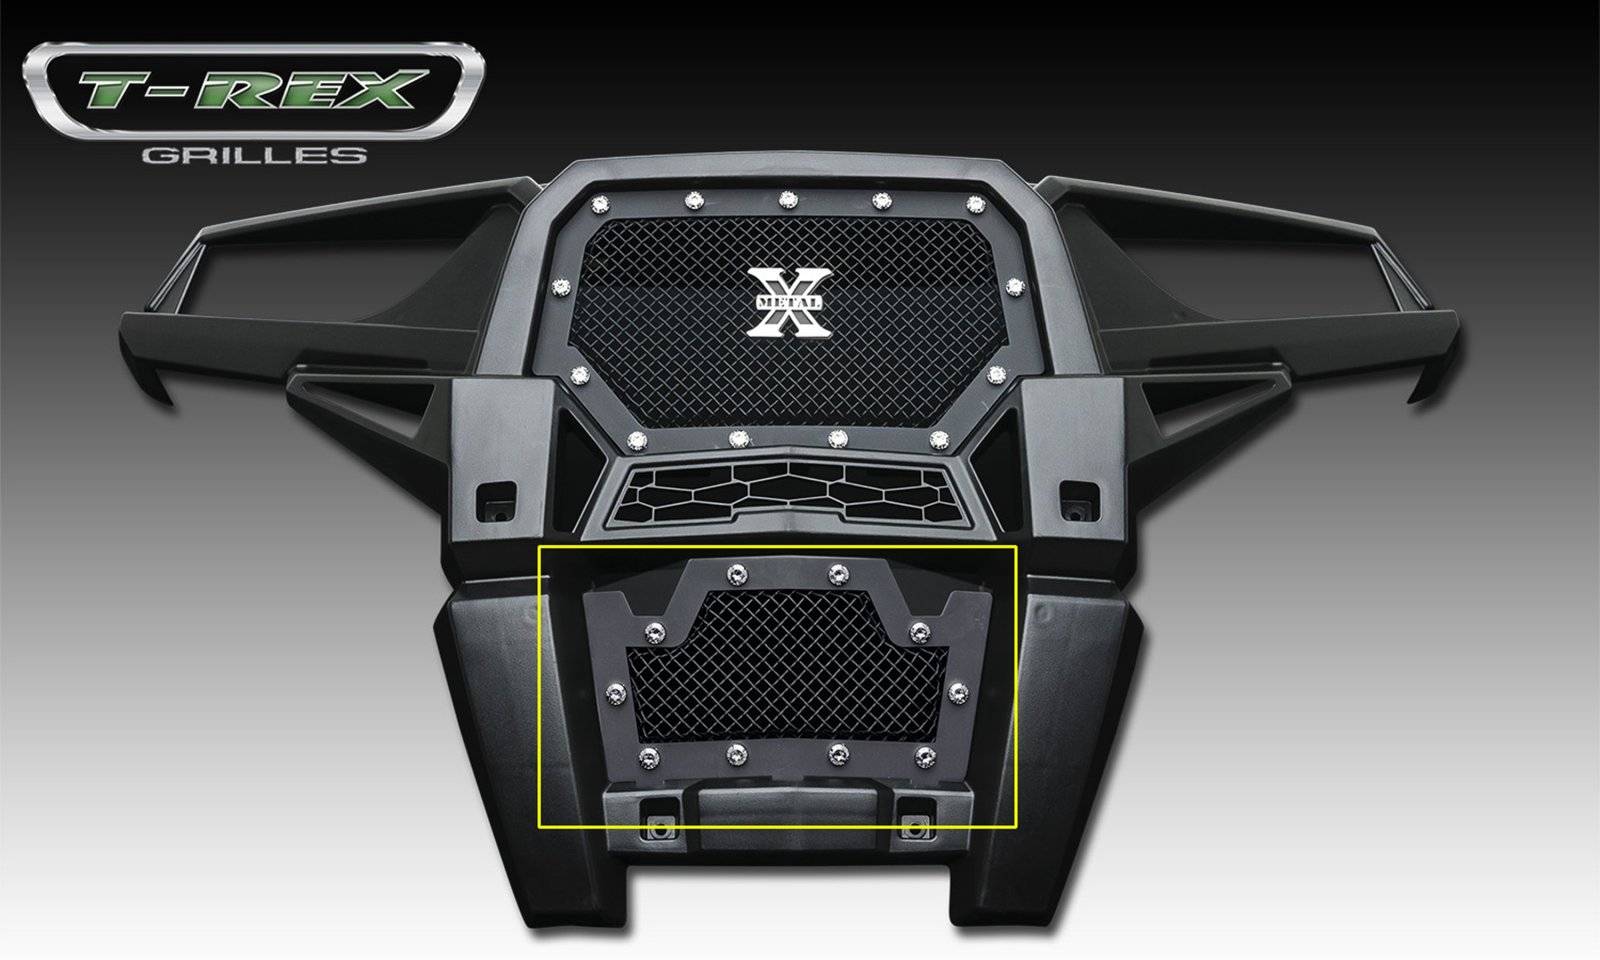 T-REX Grilles - 2014 Polaris RZR XP 1000 X-Metal Bumper Grille, Black, 1 Pc, Insert, Chrome Studs - Part # 6729011